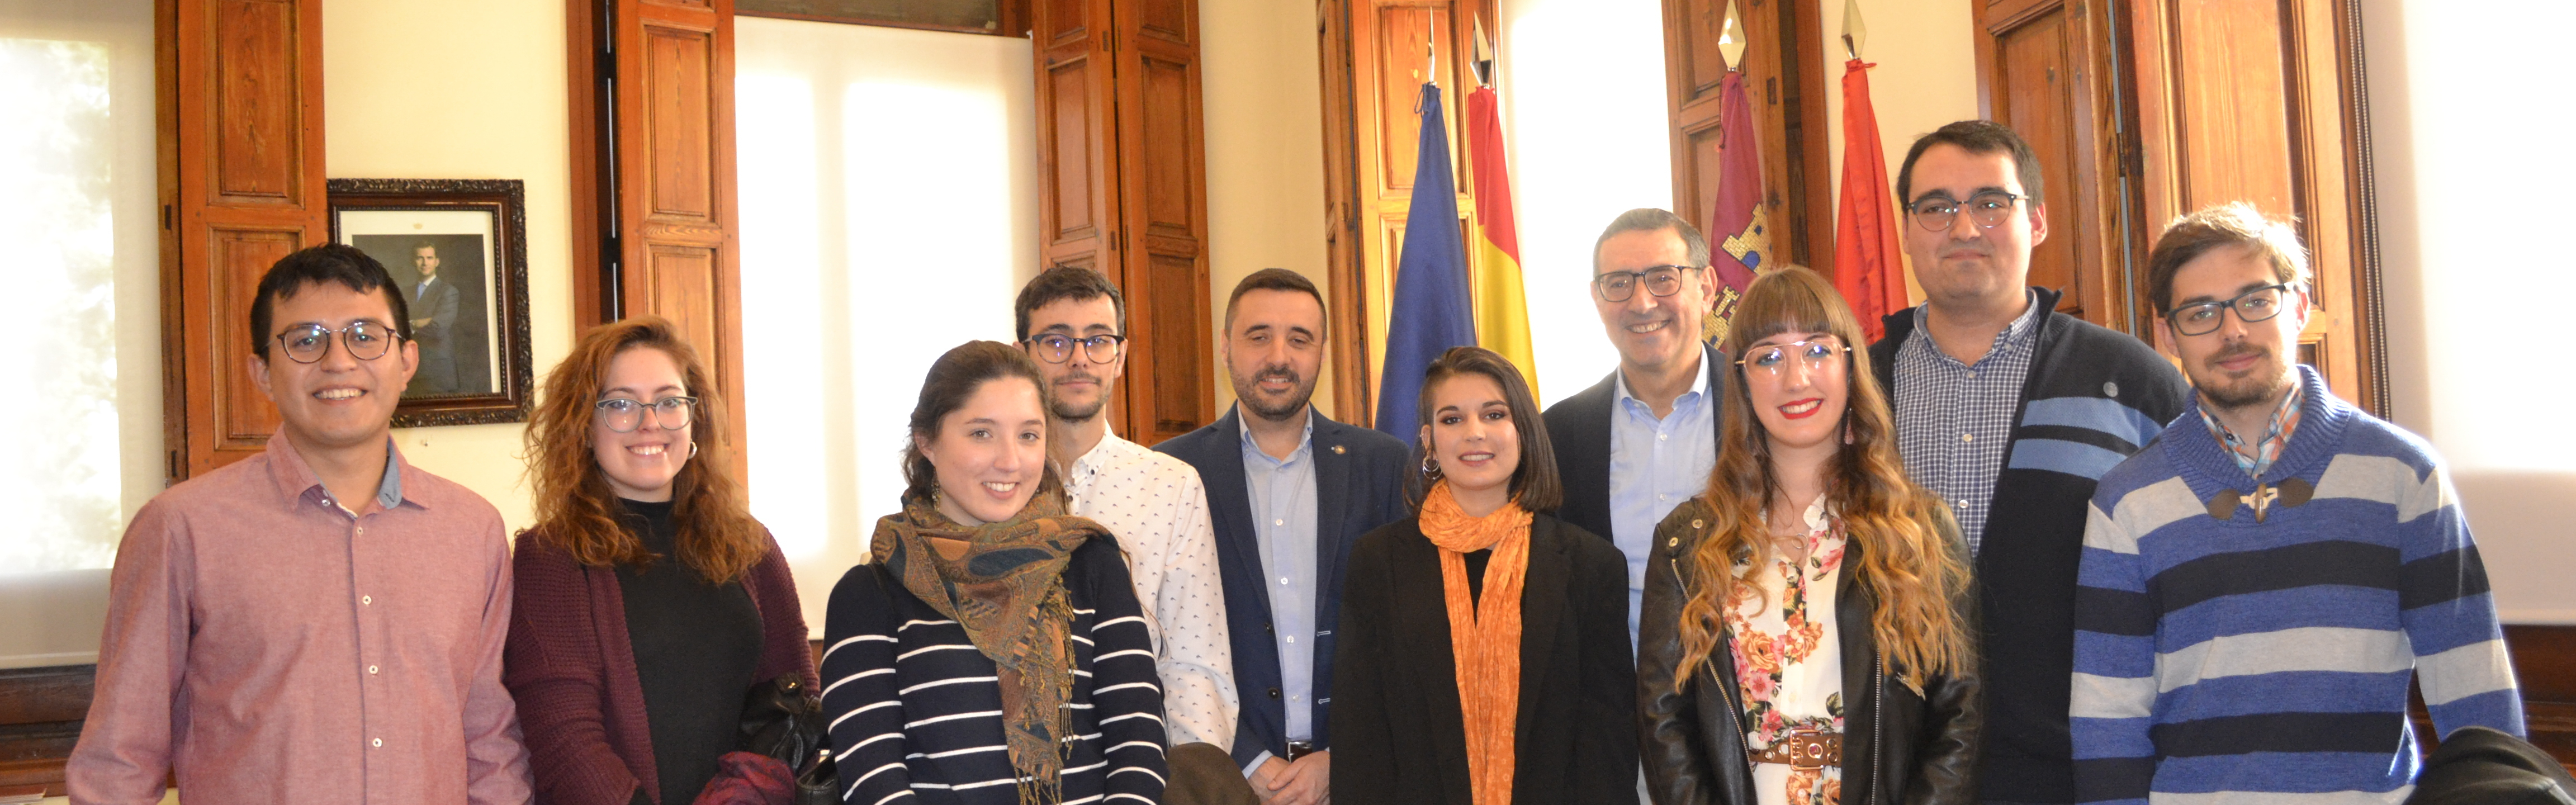 Los ganadores del premio Estudiante 2019 de la Universidad de Murcia son recibidos por el rector José Luján